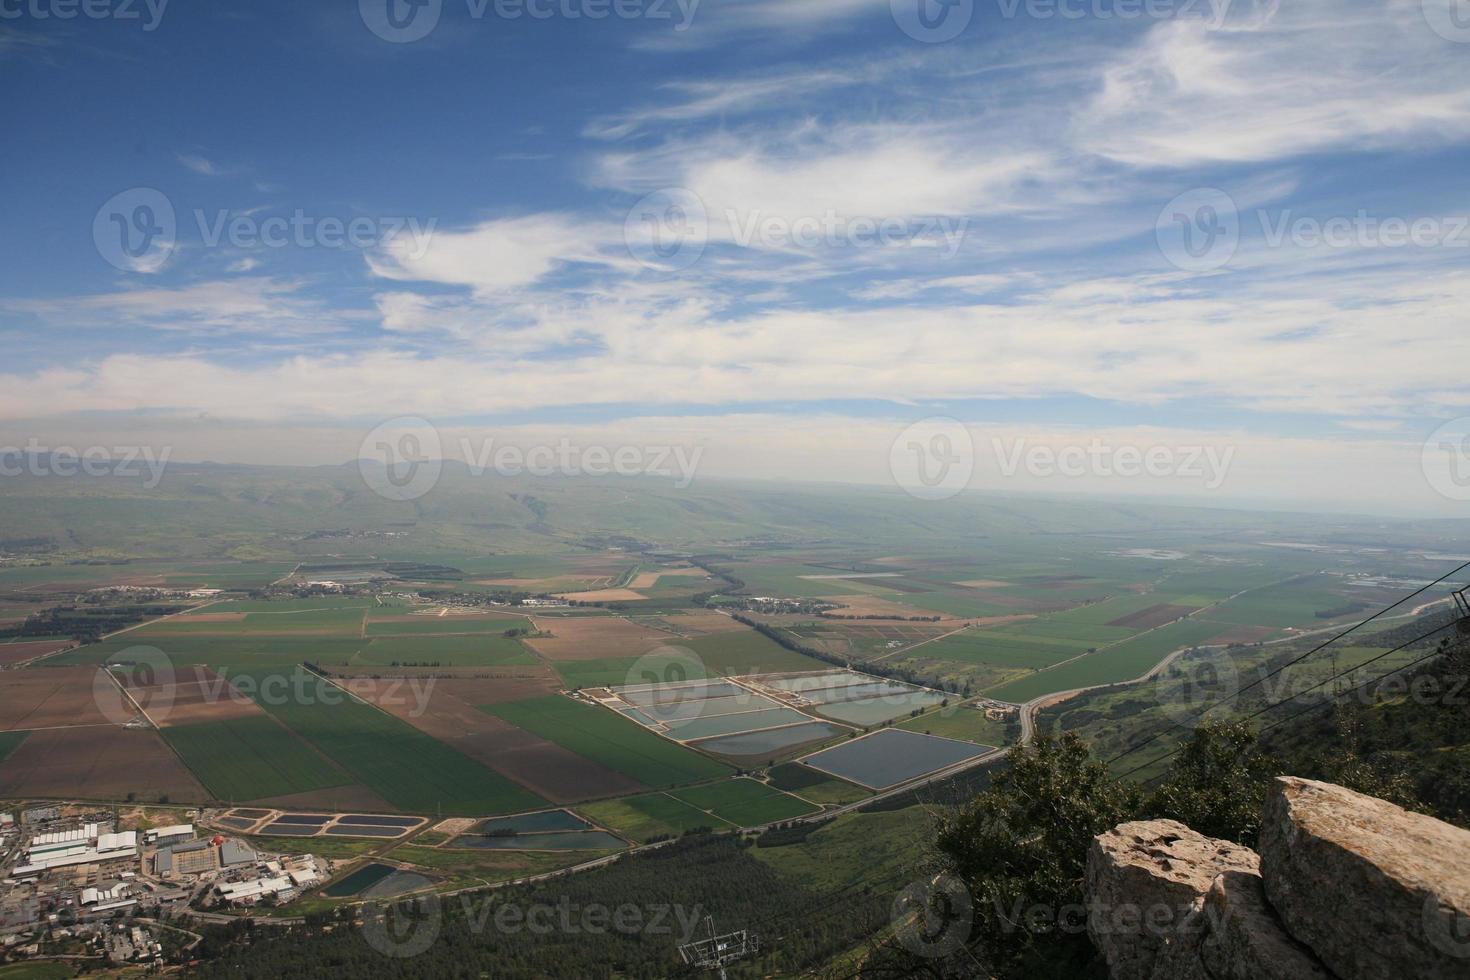 paisajes asombrosos de israel, vistas de la tierra santa foto